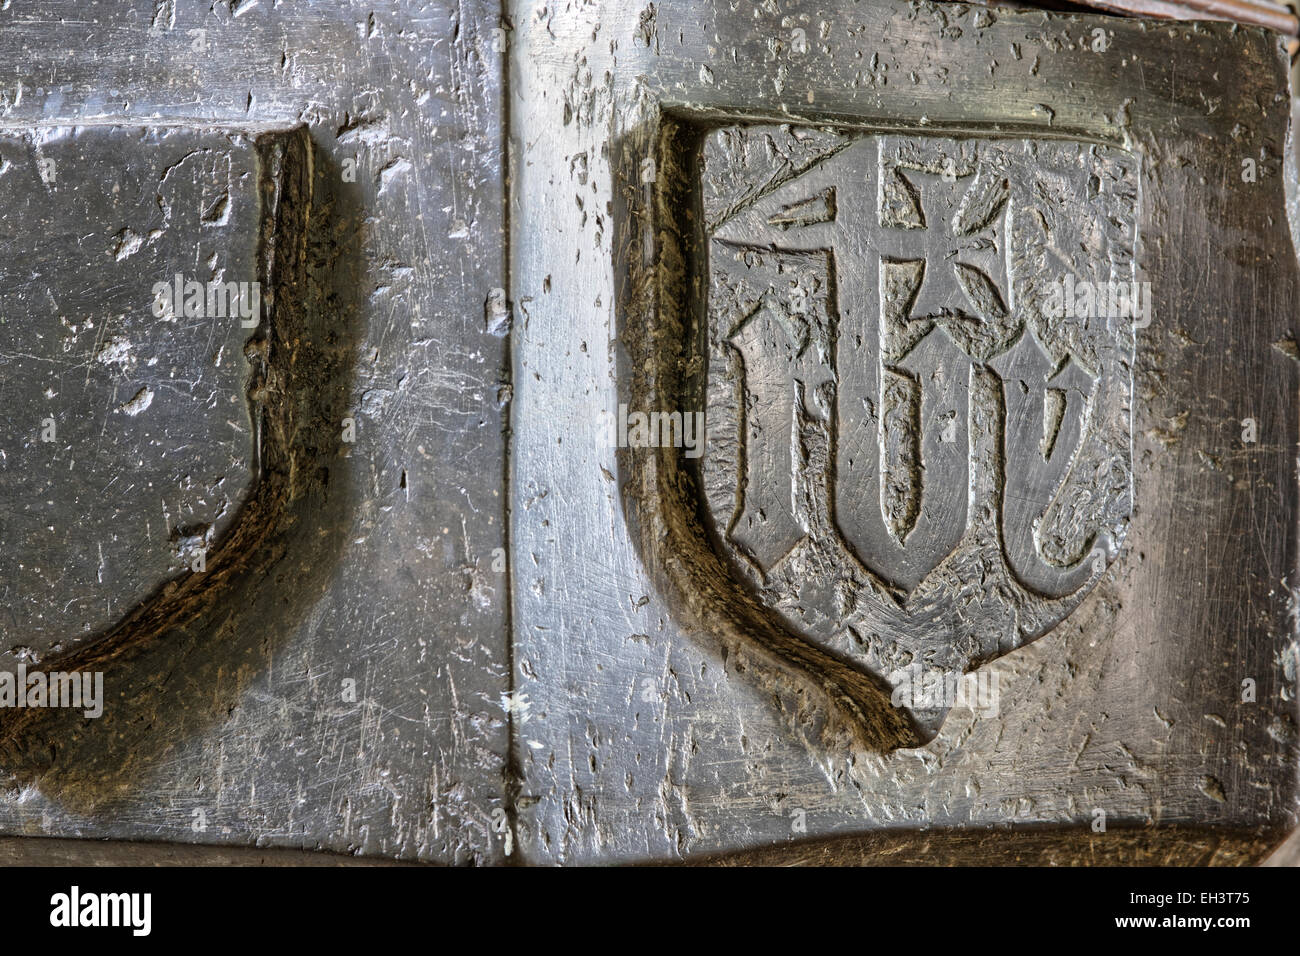 Xv secolo lettering medievale 'Chi' su un fonte battesimale in marmo, la chiesa di Santa Maria, Richmond, North Yorkshire, Inghilterra, Regno Unito. Foto Stock